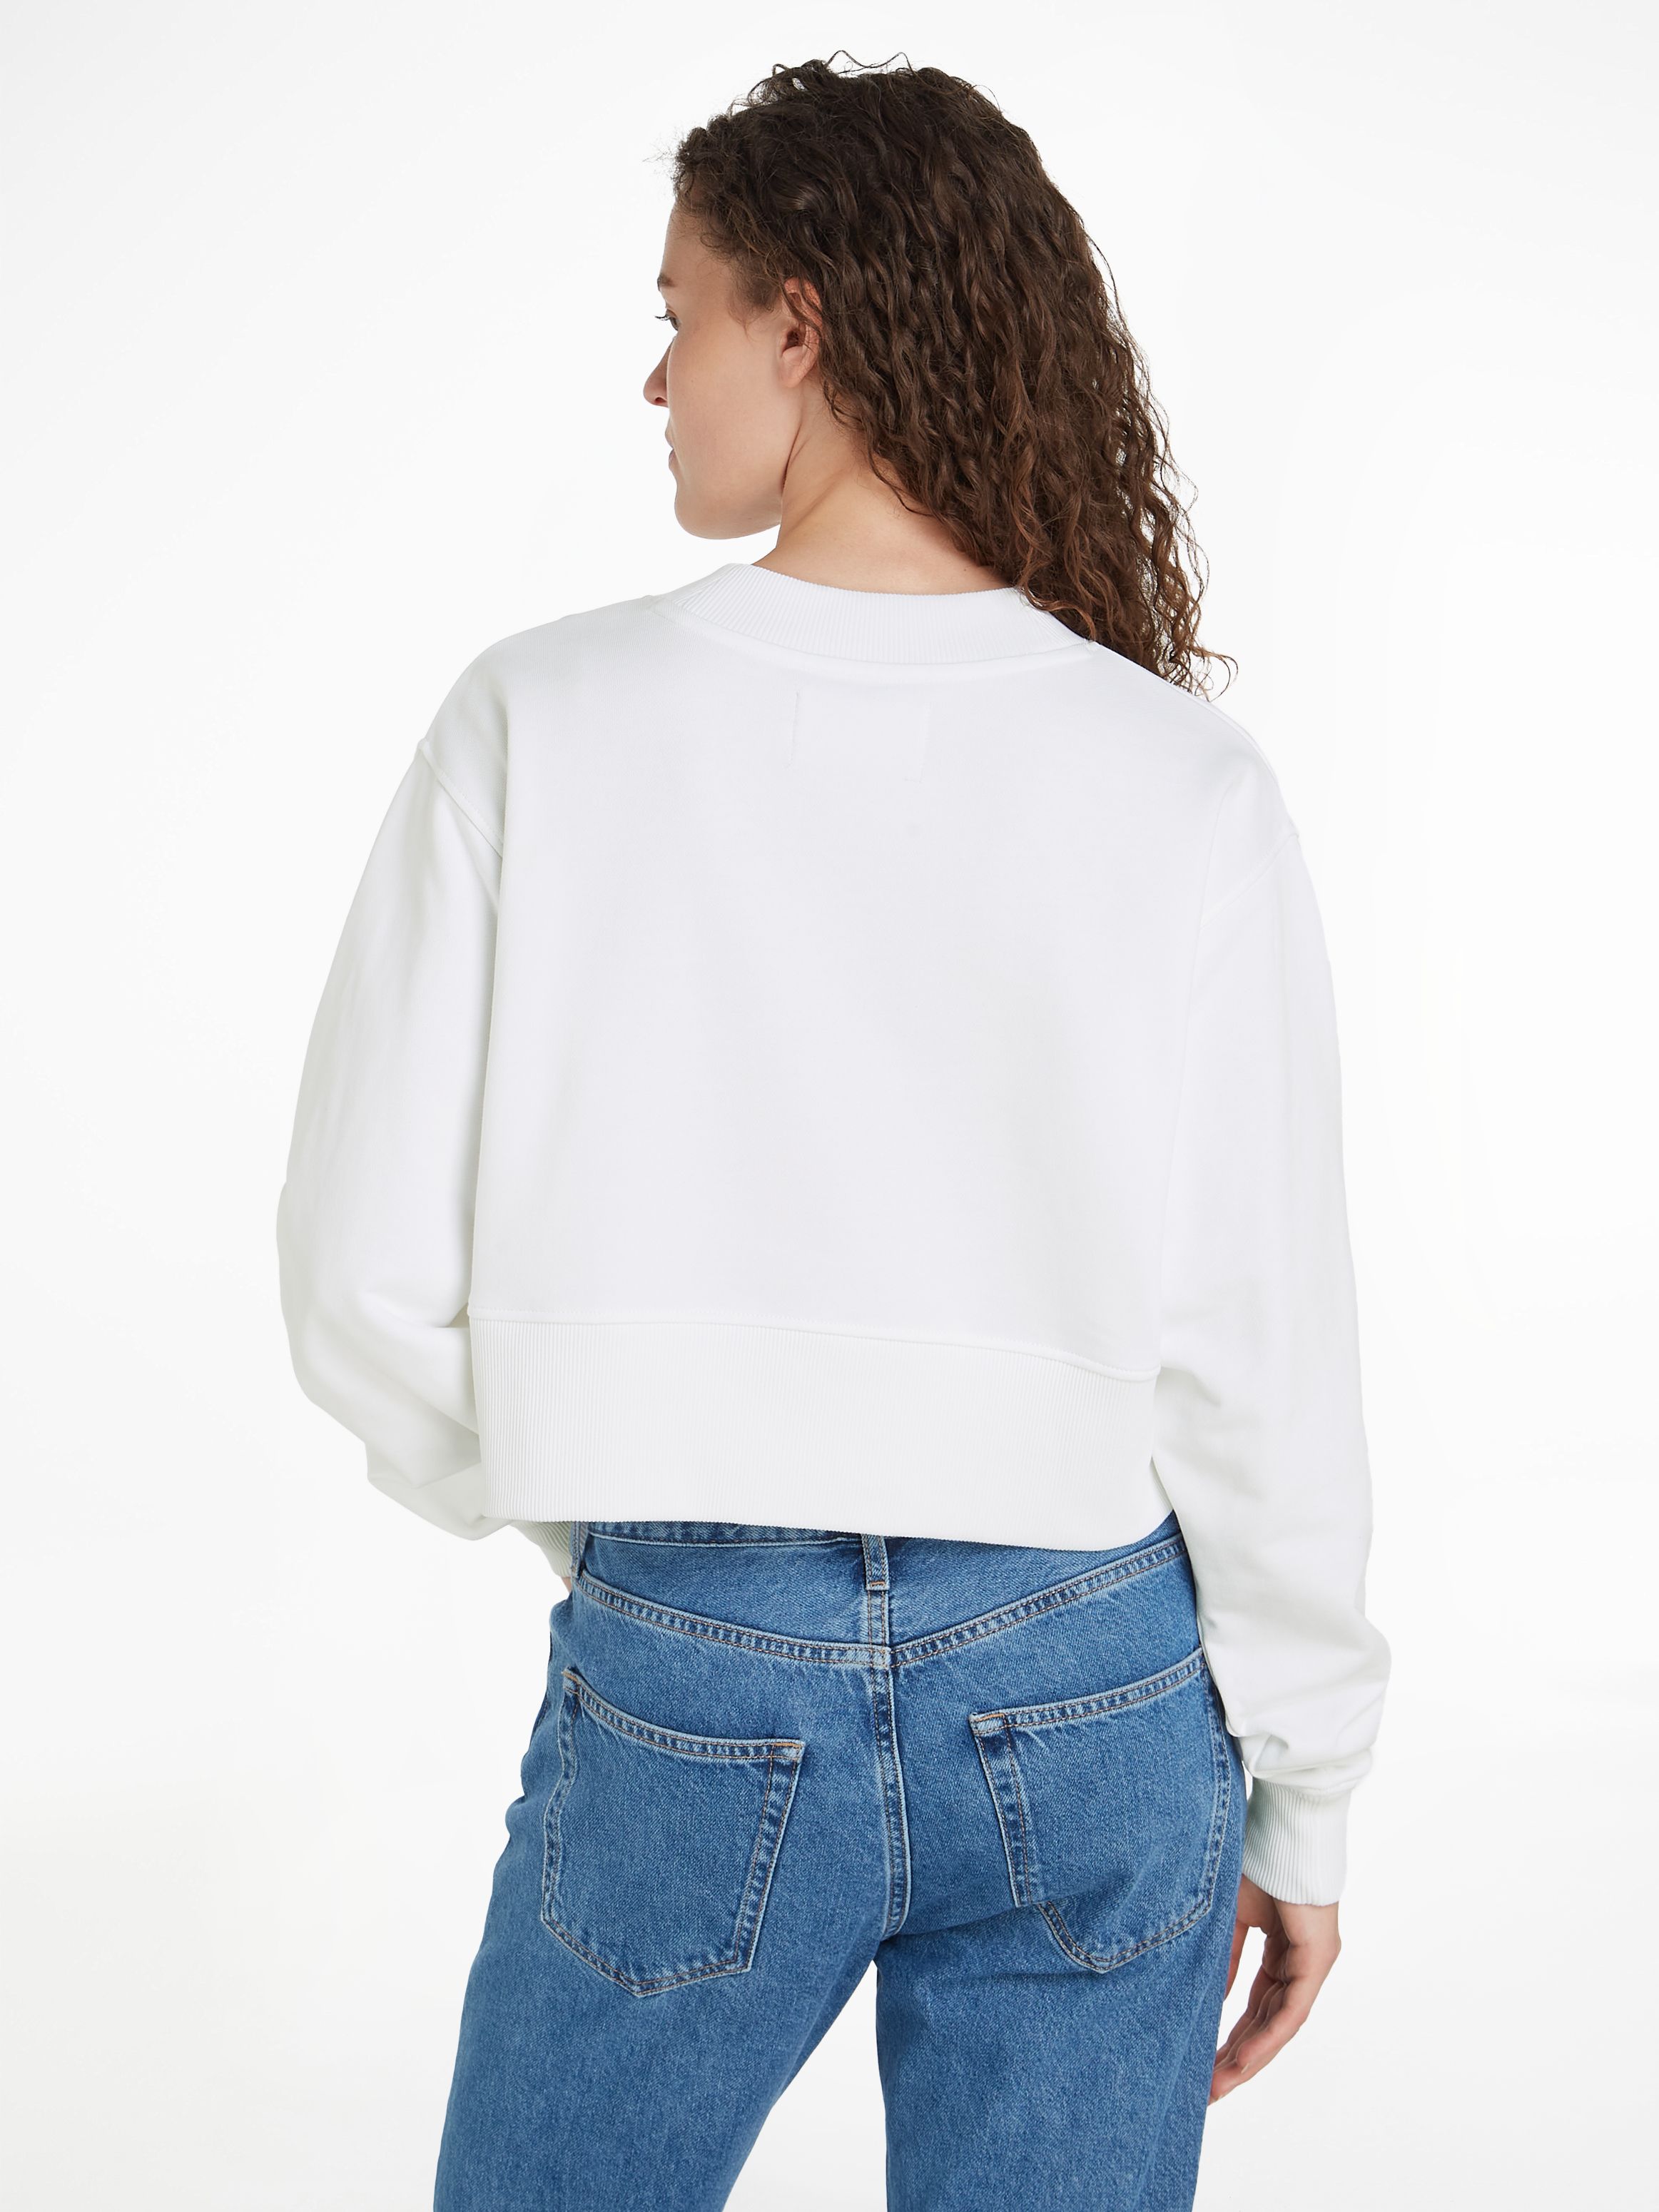 Calvin Klein Jeans Stacked Institutional Crewneck Sweatshirt